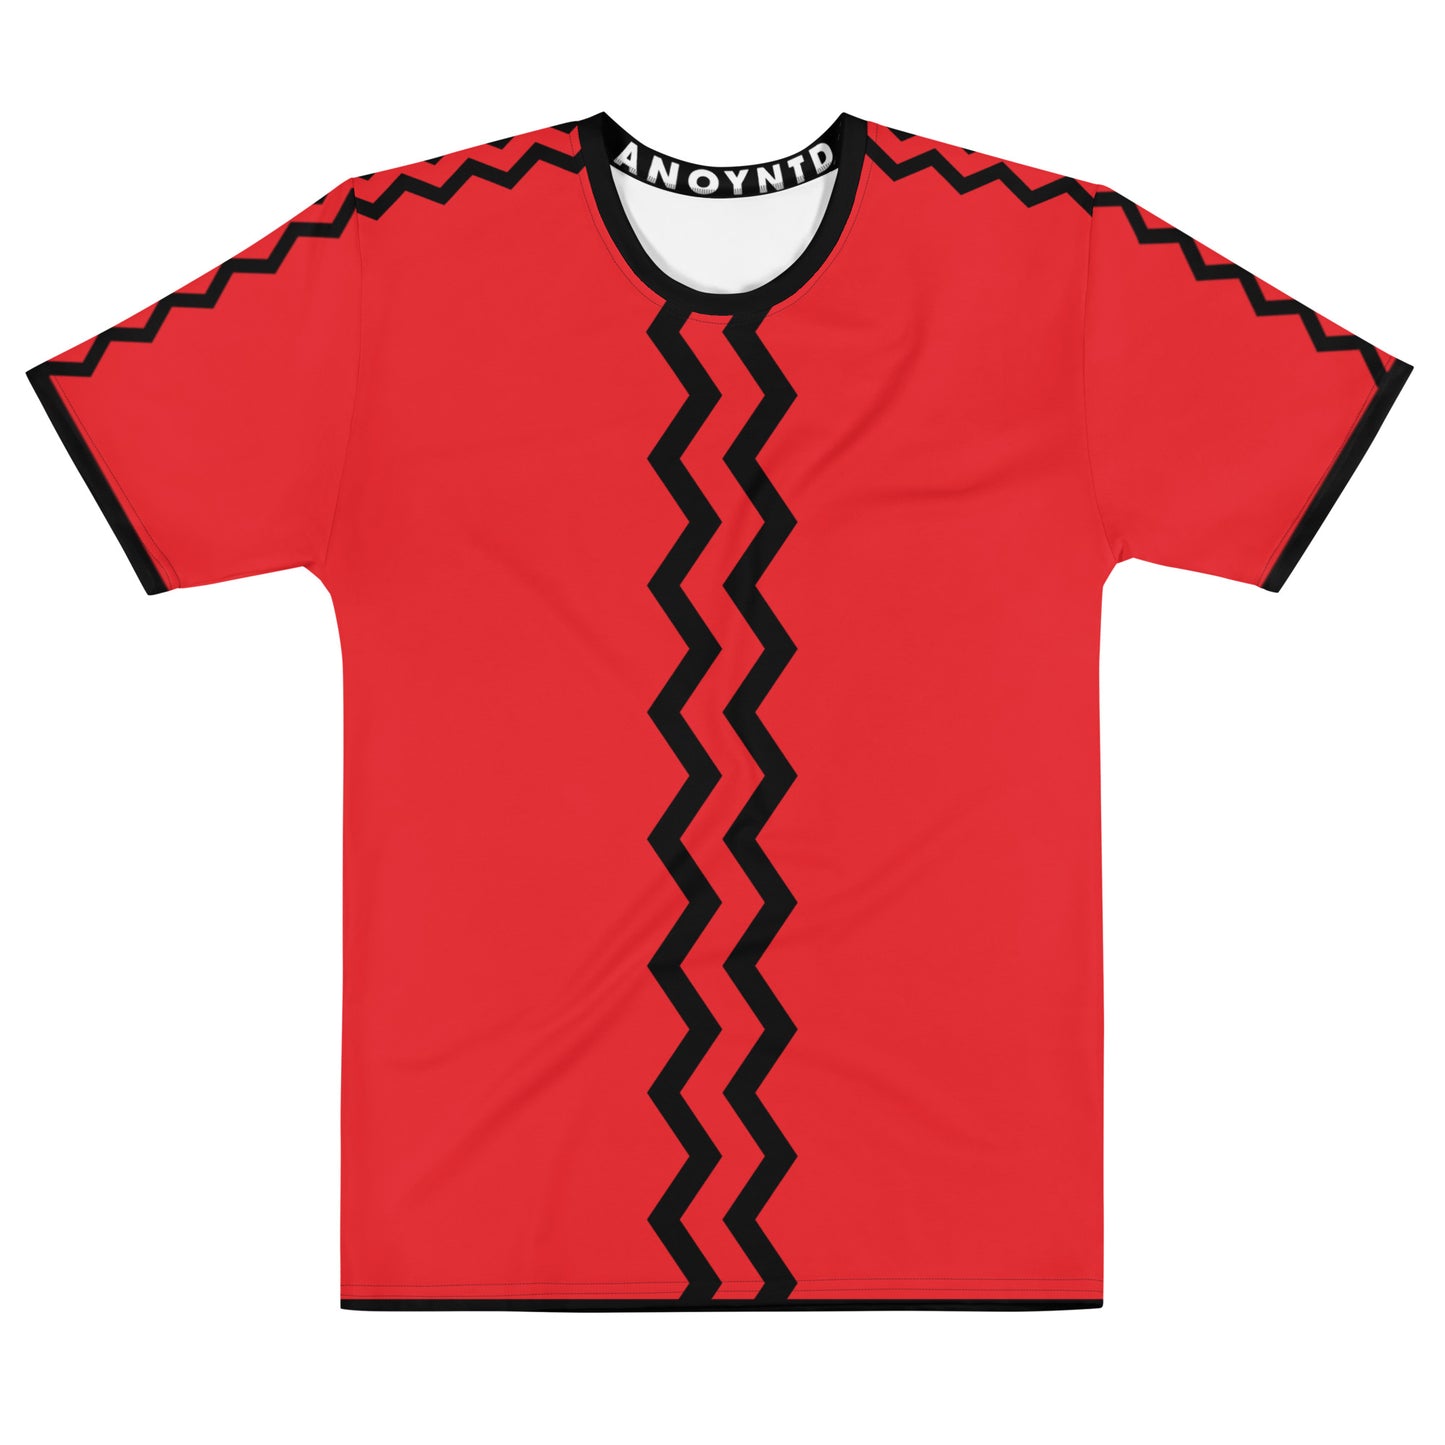 ANOYNTD [ZIG ZAG] Series Men's t-shirt